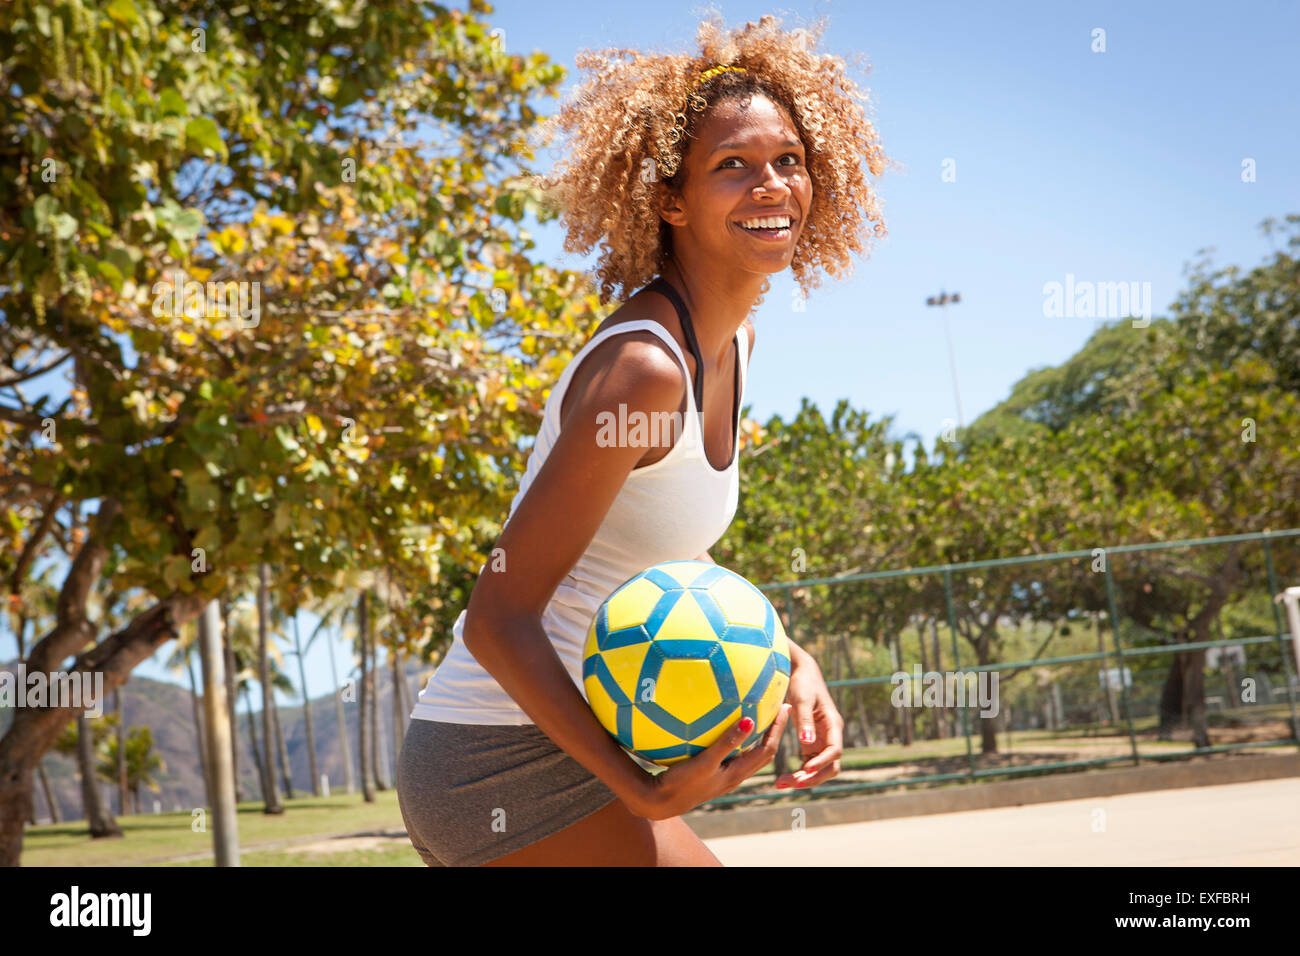 Retrato de joven jugador de baloncesto femenino con bola Foto de stock